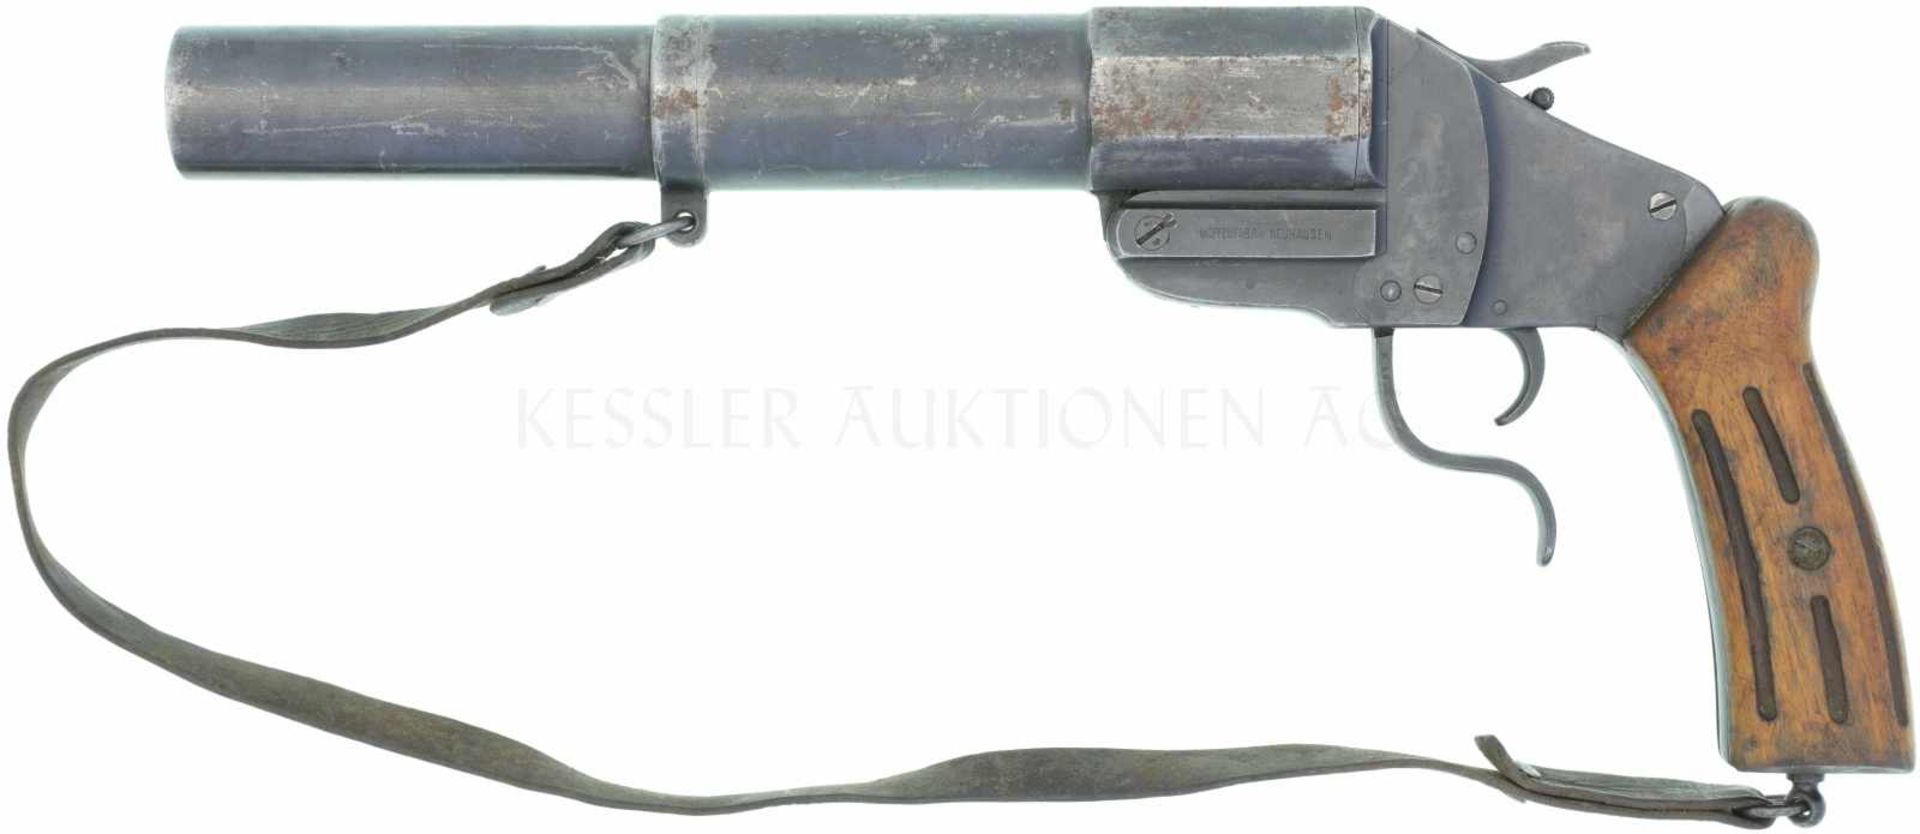 Leuchtpistole, Waffenfabrik Neuhausen, RP 17/38, Kal. 34mm LL 275mm, TL 410mm, Kipplaufwaffe,